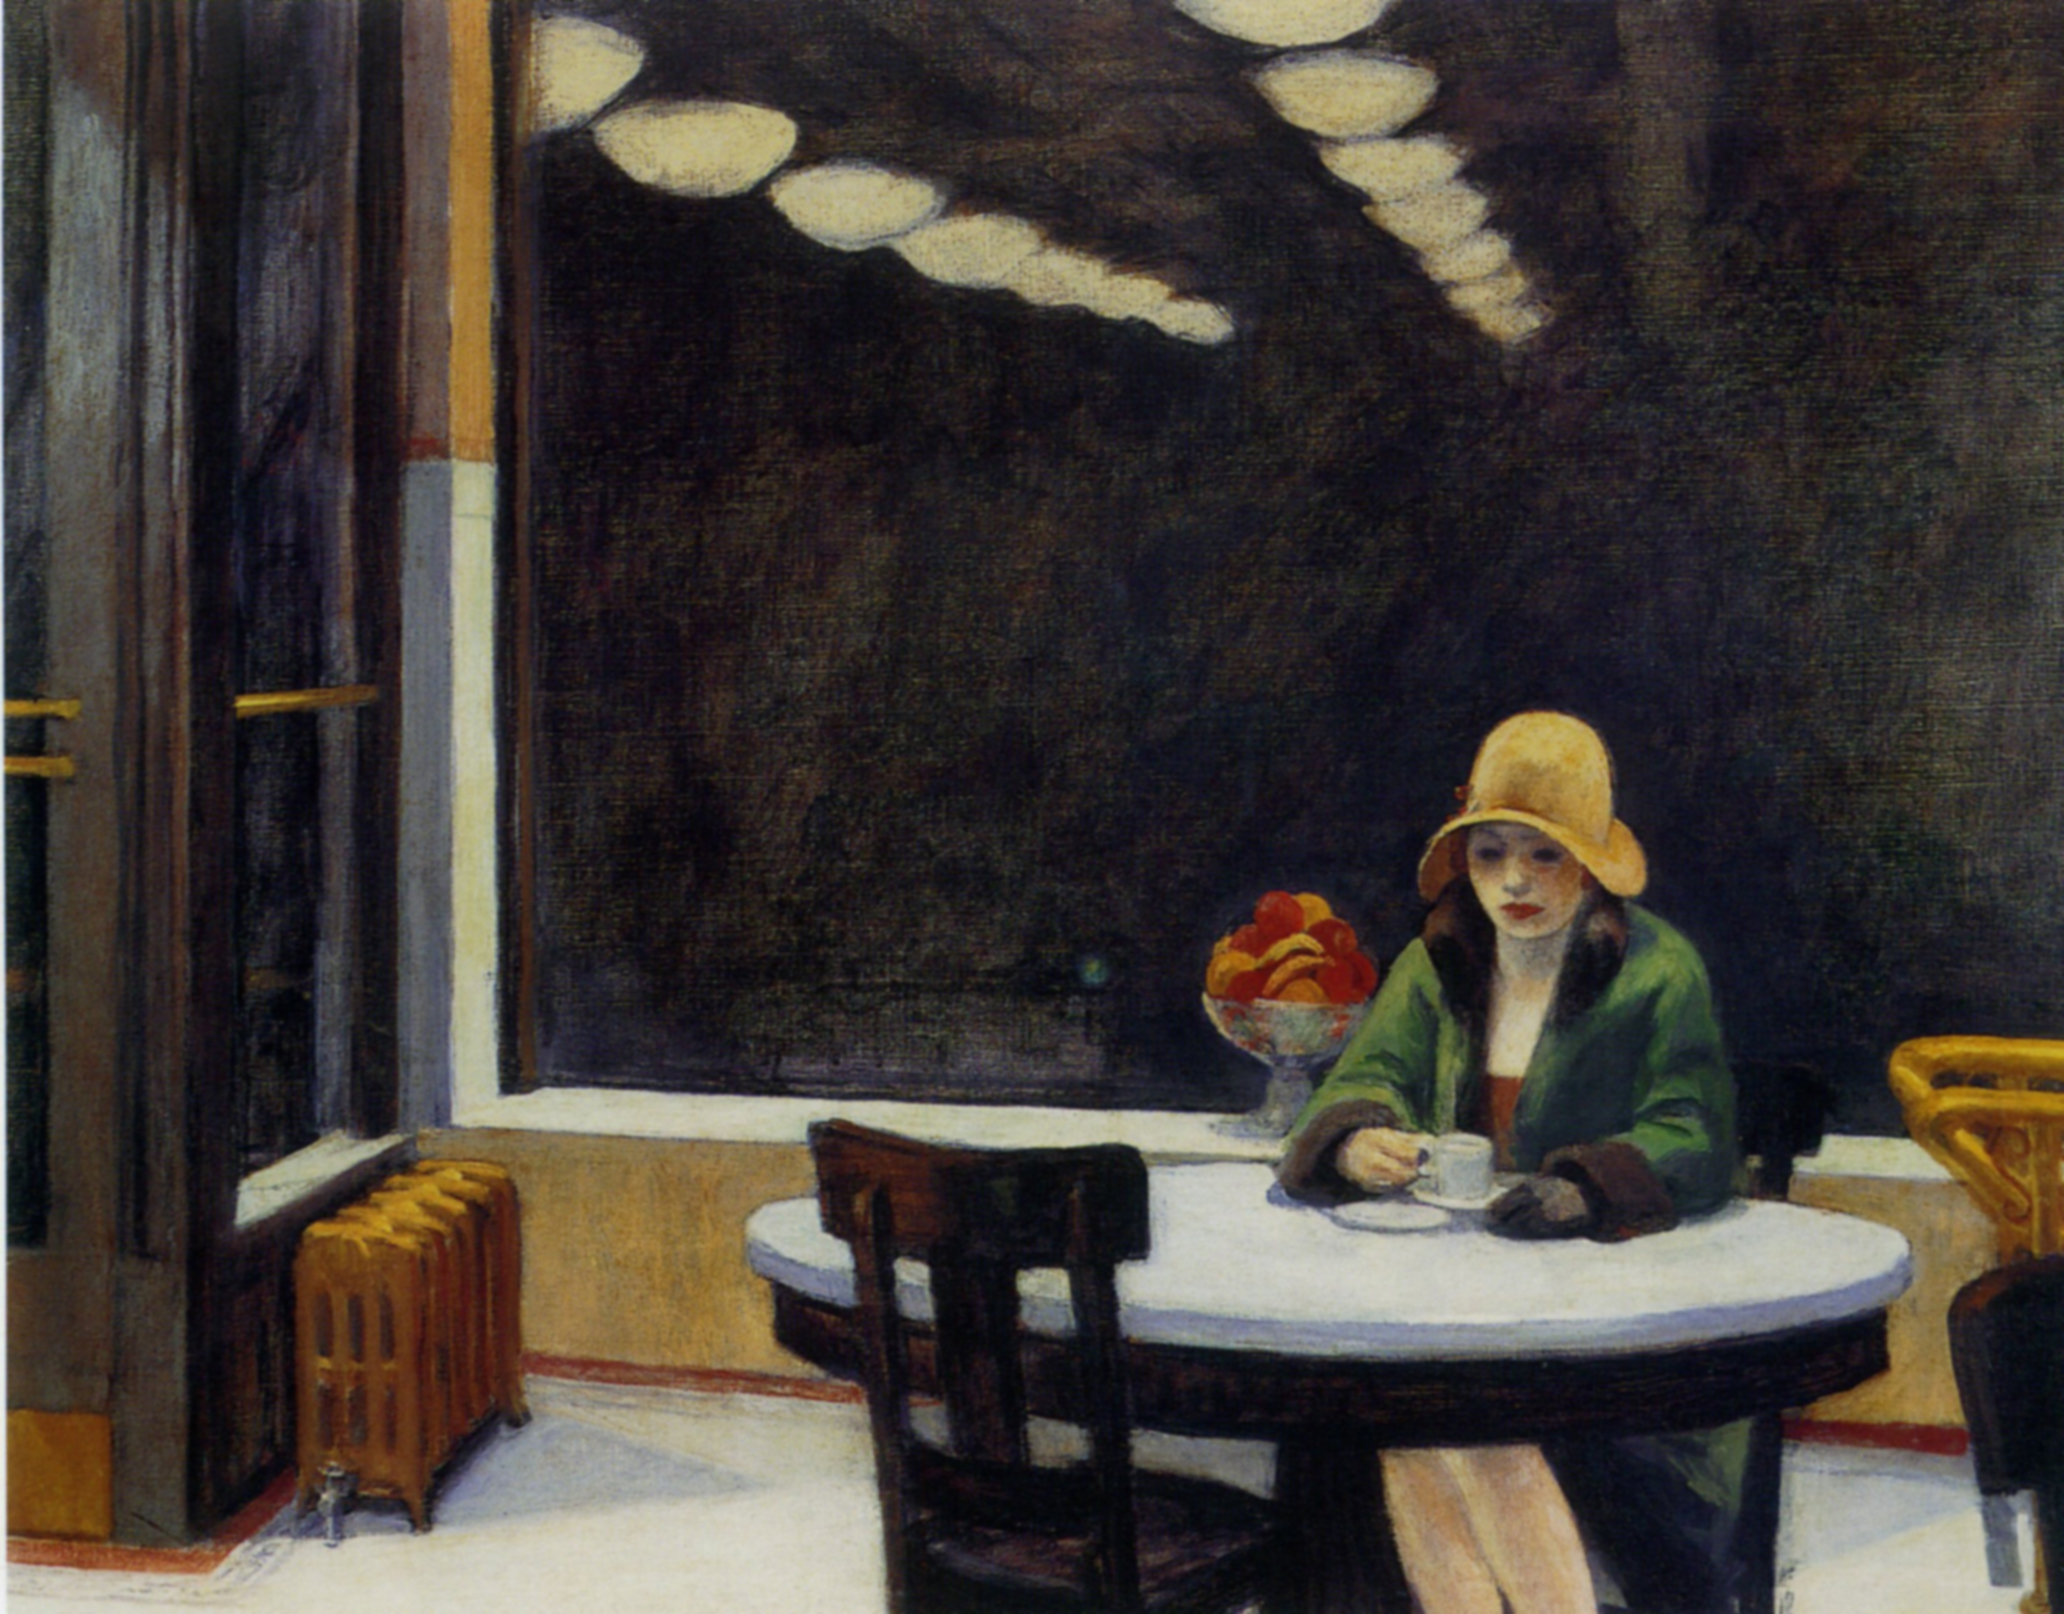 Automata étterem by Edward Hopper - 1927 - 71,4 cm × 91,4 cm 